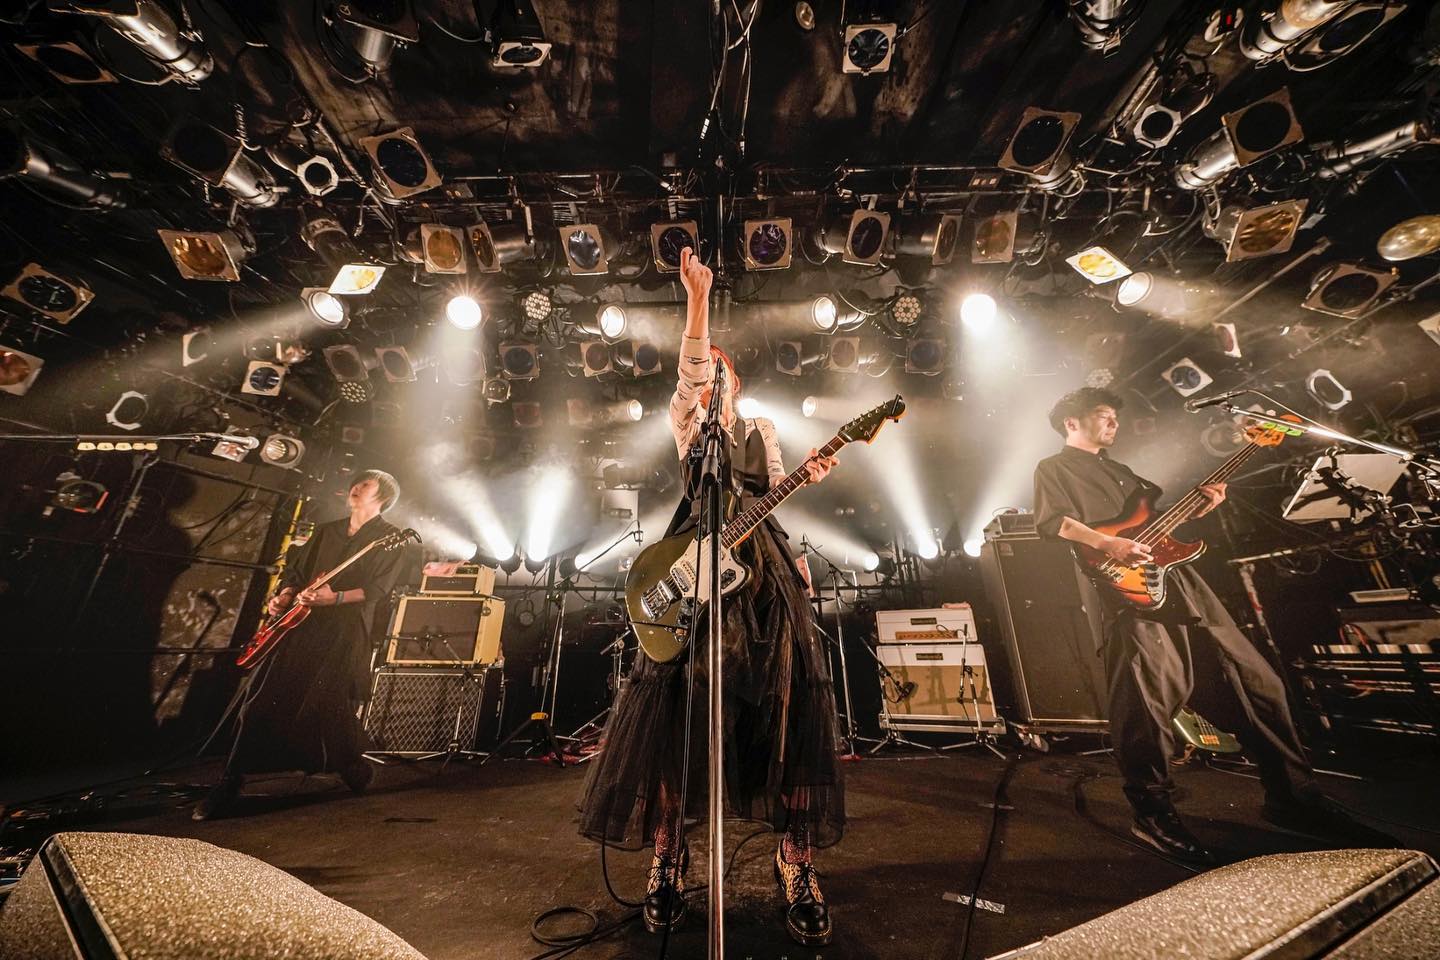 nano.RIPE live concert - "Koori no Dokutsu" tour final at Shibuya QUATTRO. Photo Credit: nano.RIPE Instagram